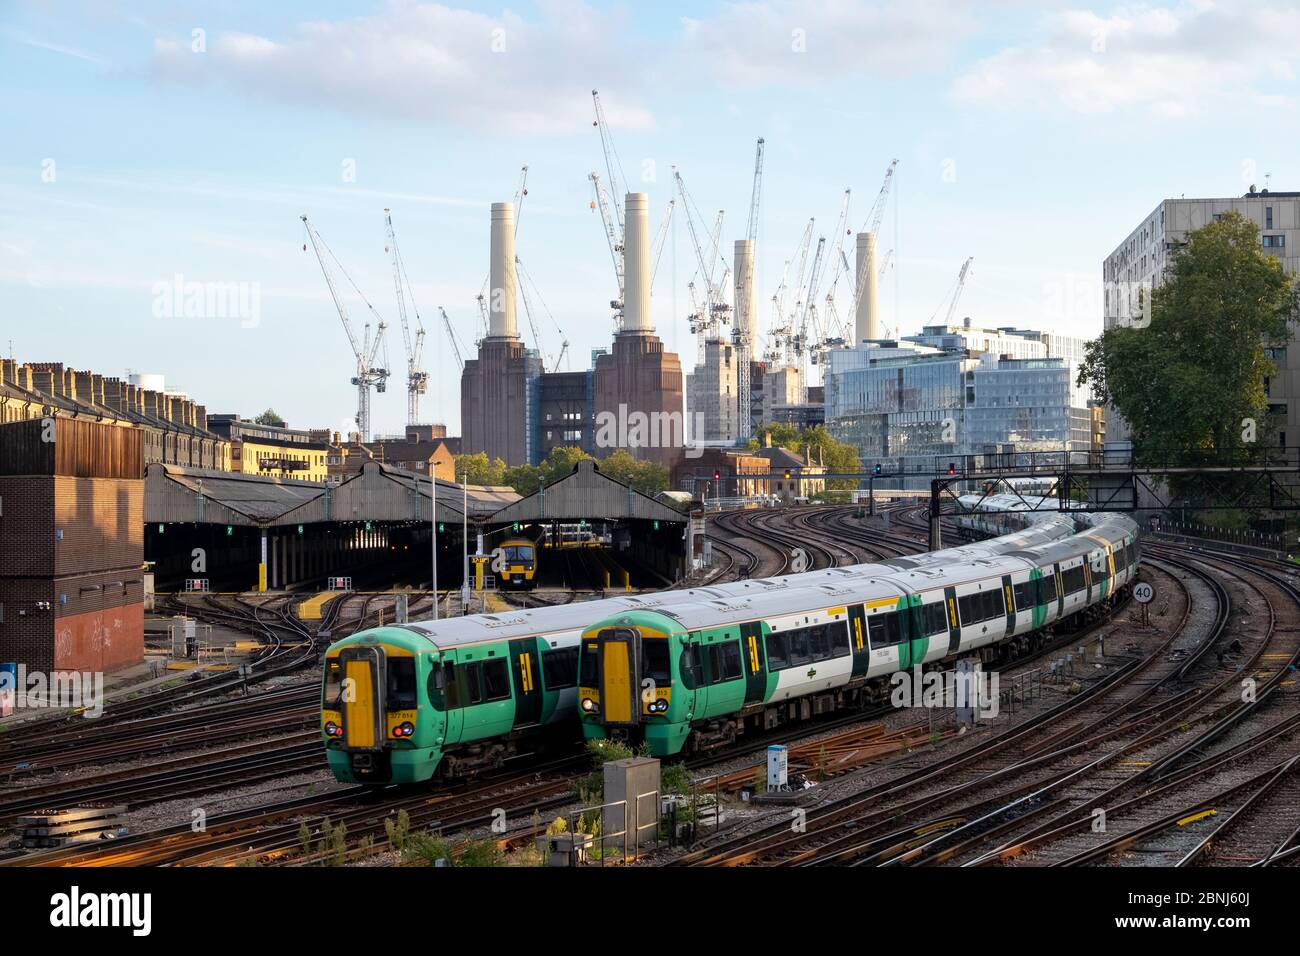 Trains de voyageurs en direction de la gare Victoria de Londres avec la centrale électrique Battersea en construction, Londres, Angleterre, Royaume-Uni, Europe Banque D'Images